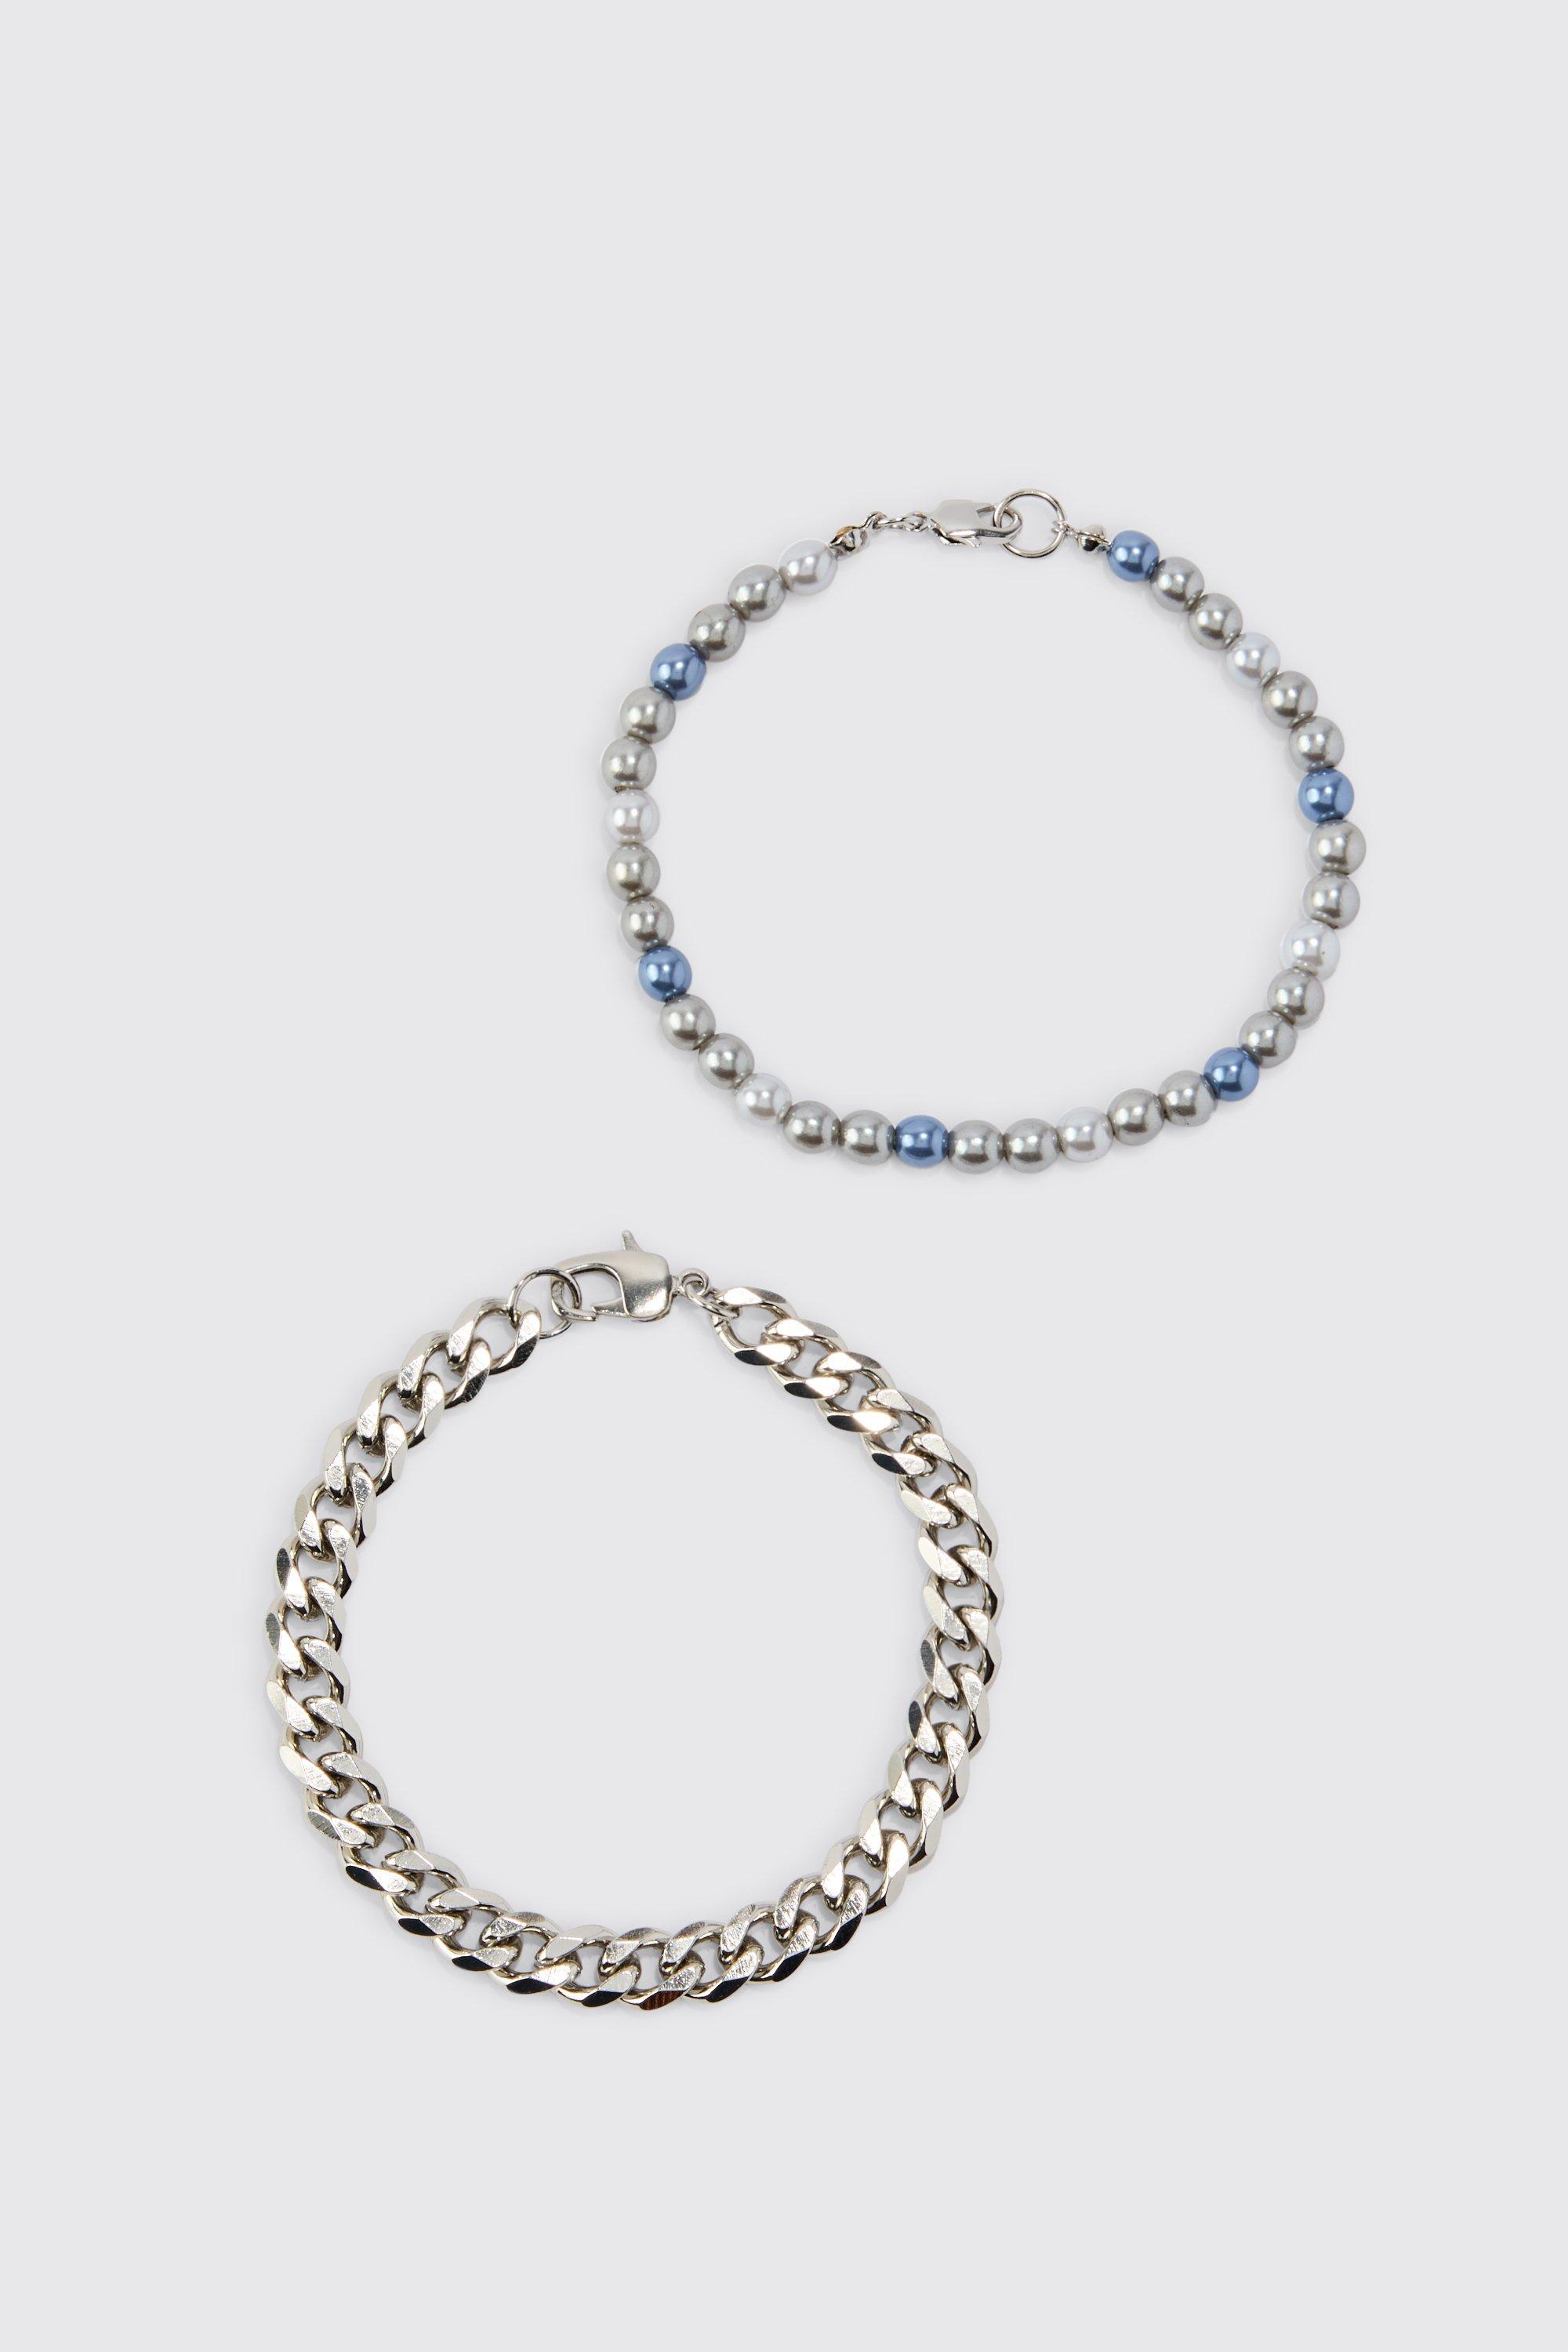 lot de 2 bracelets en chaîne et perles homme - argent - one size, argent